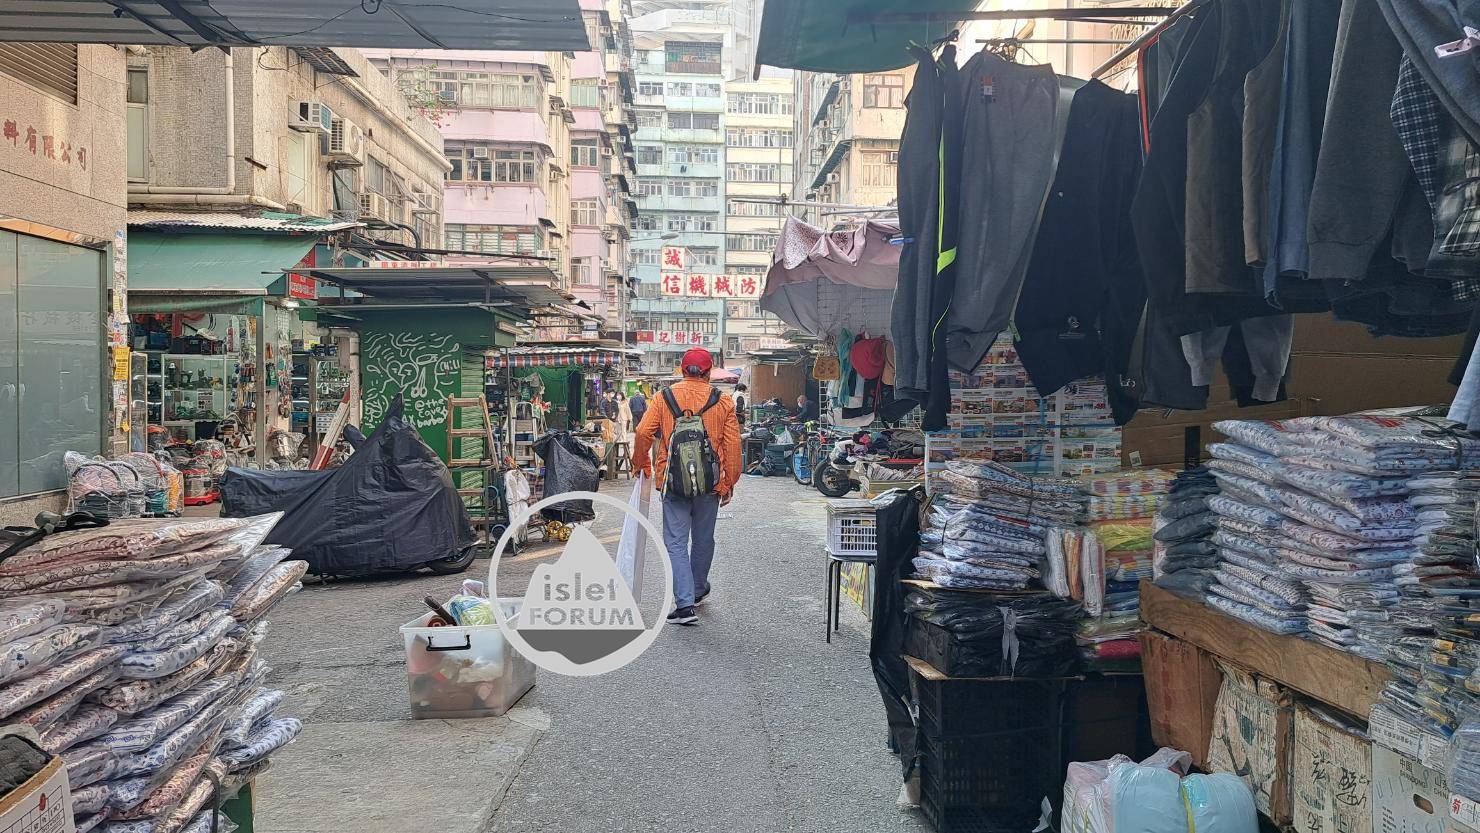 上海街廣東道之間的快富街小販檔 Fife Street Hawker Stall (4).jpg